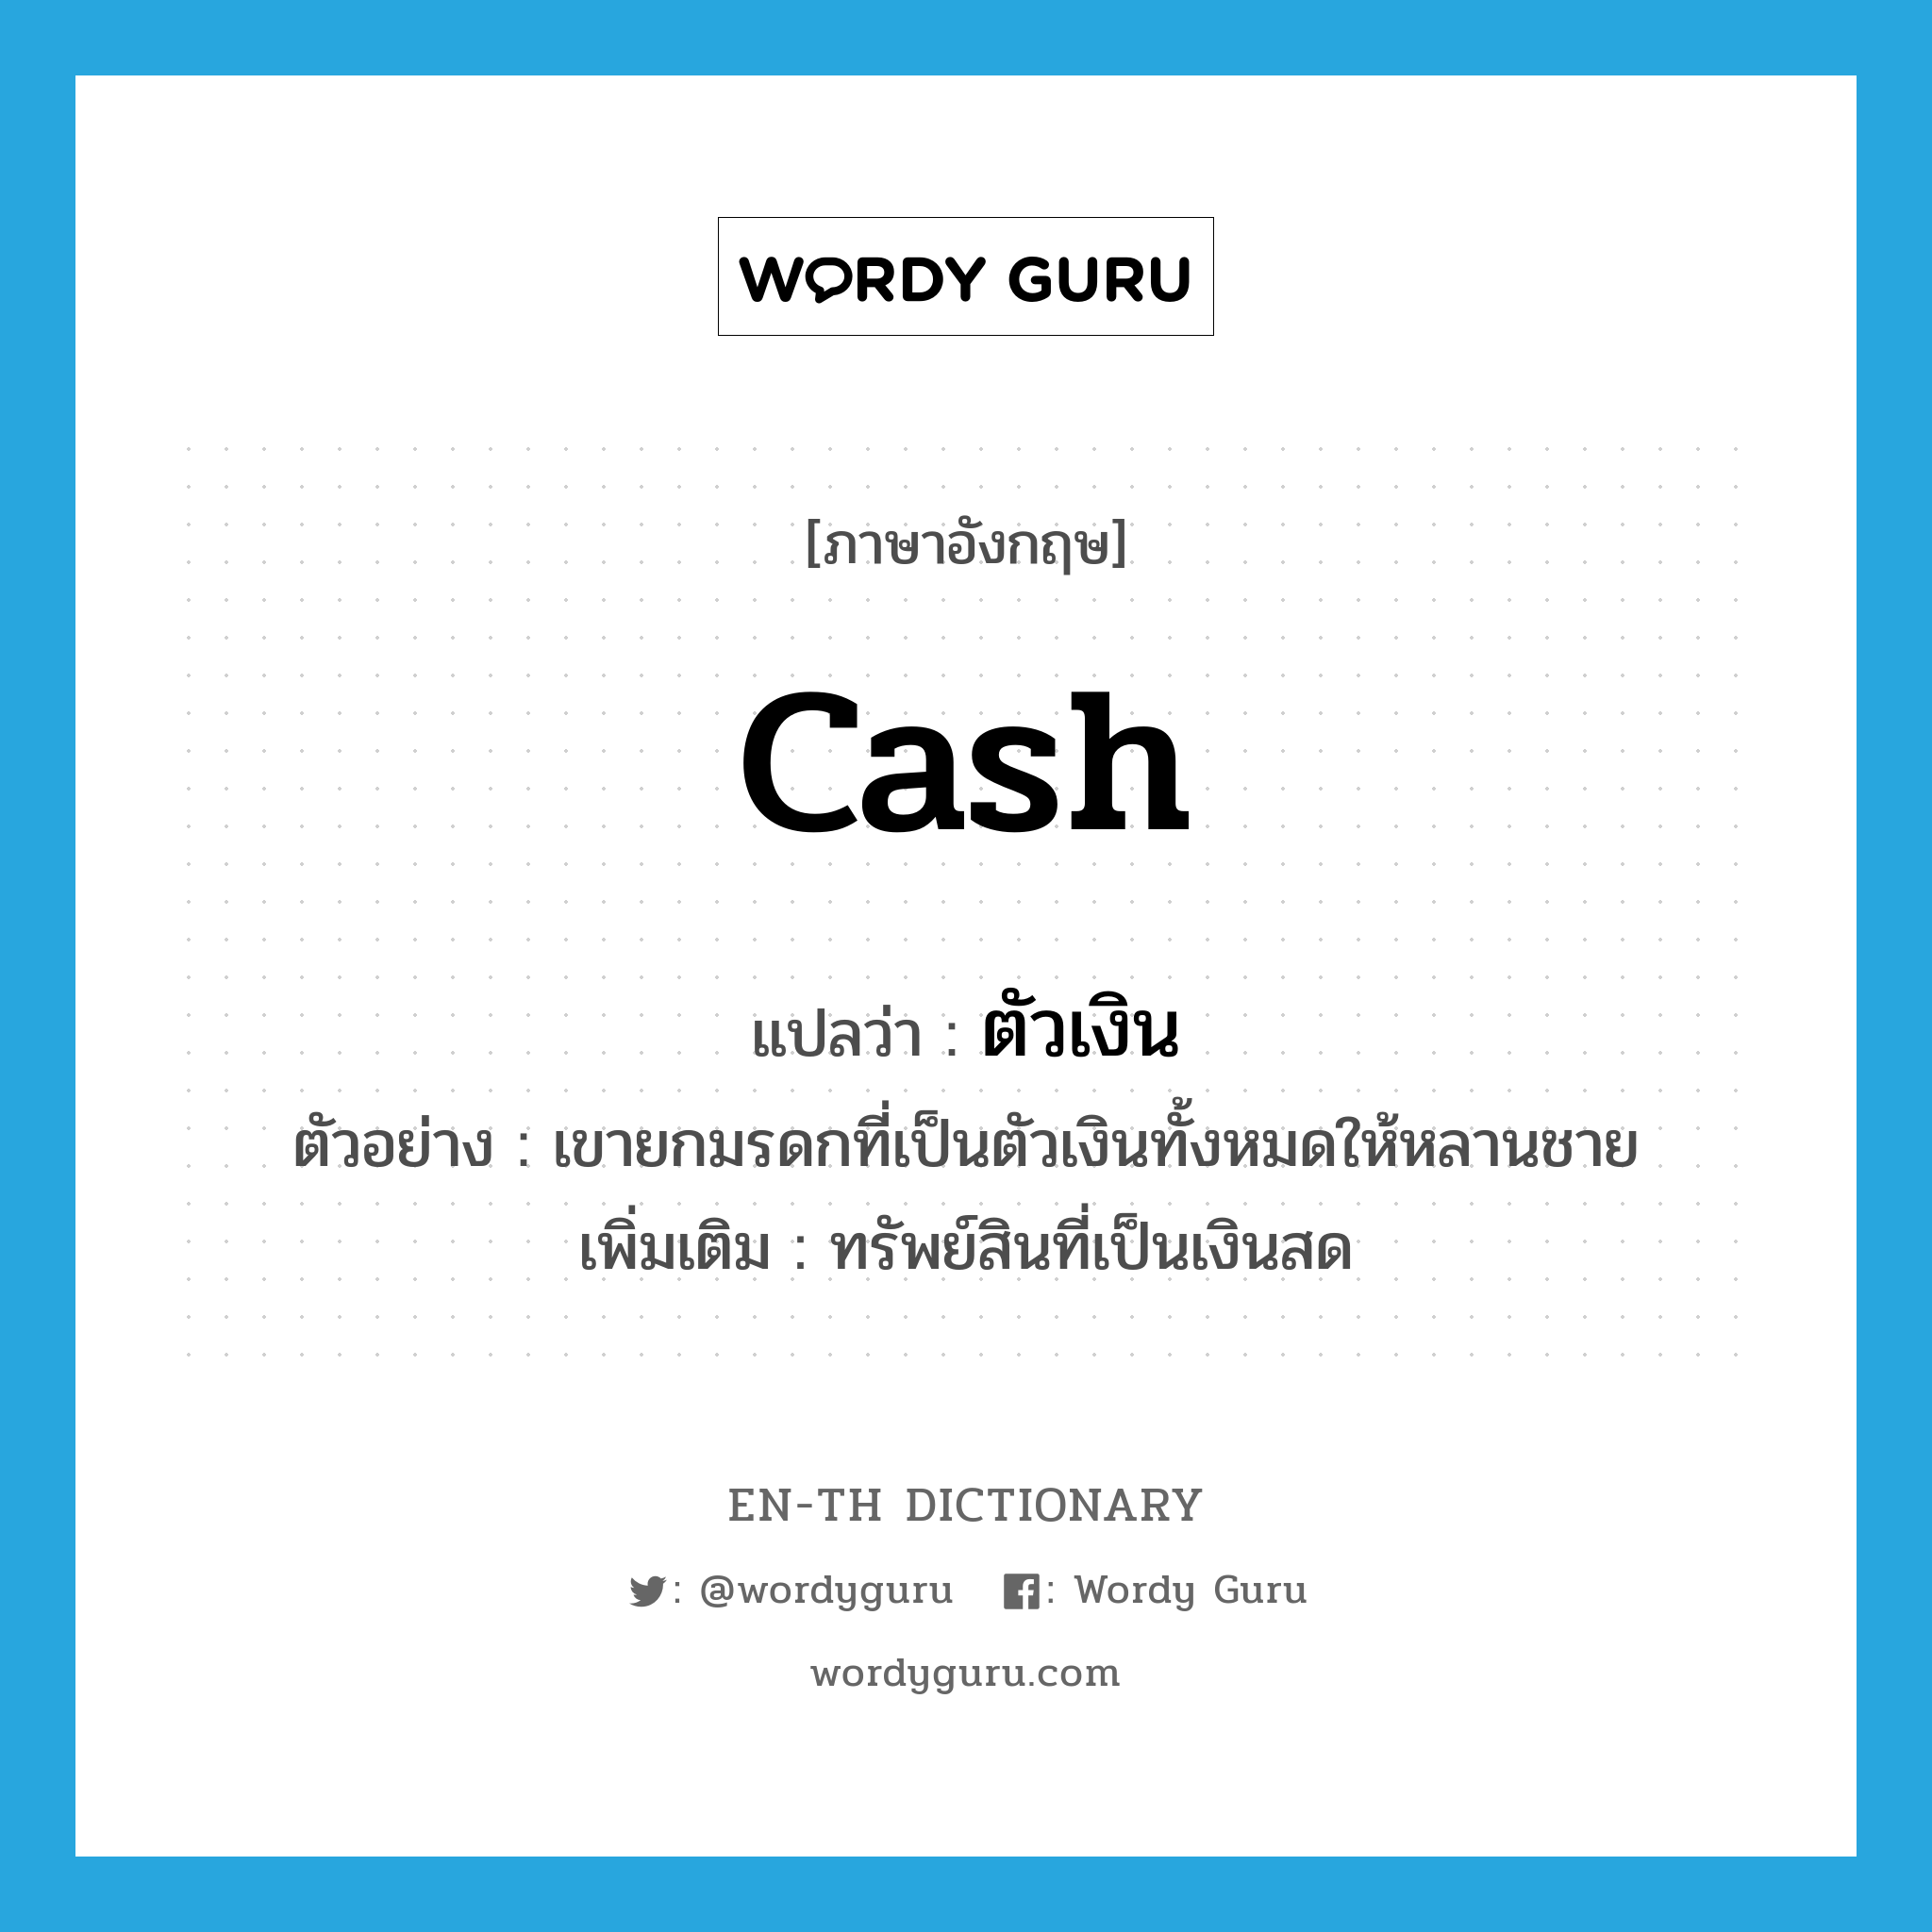 cash แปลว่า?, คำศัพท์ภาษาอังกฤษ cash แปลว่า ตัวเงิน ประเภท N ตัวอย่าง เขายกมรดกที่เป็นตัวเงินทั้งหมดให้หลานชาย เพิ่มเติม ทรัพย์สินที่เป็นเงินสด หมวด N